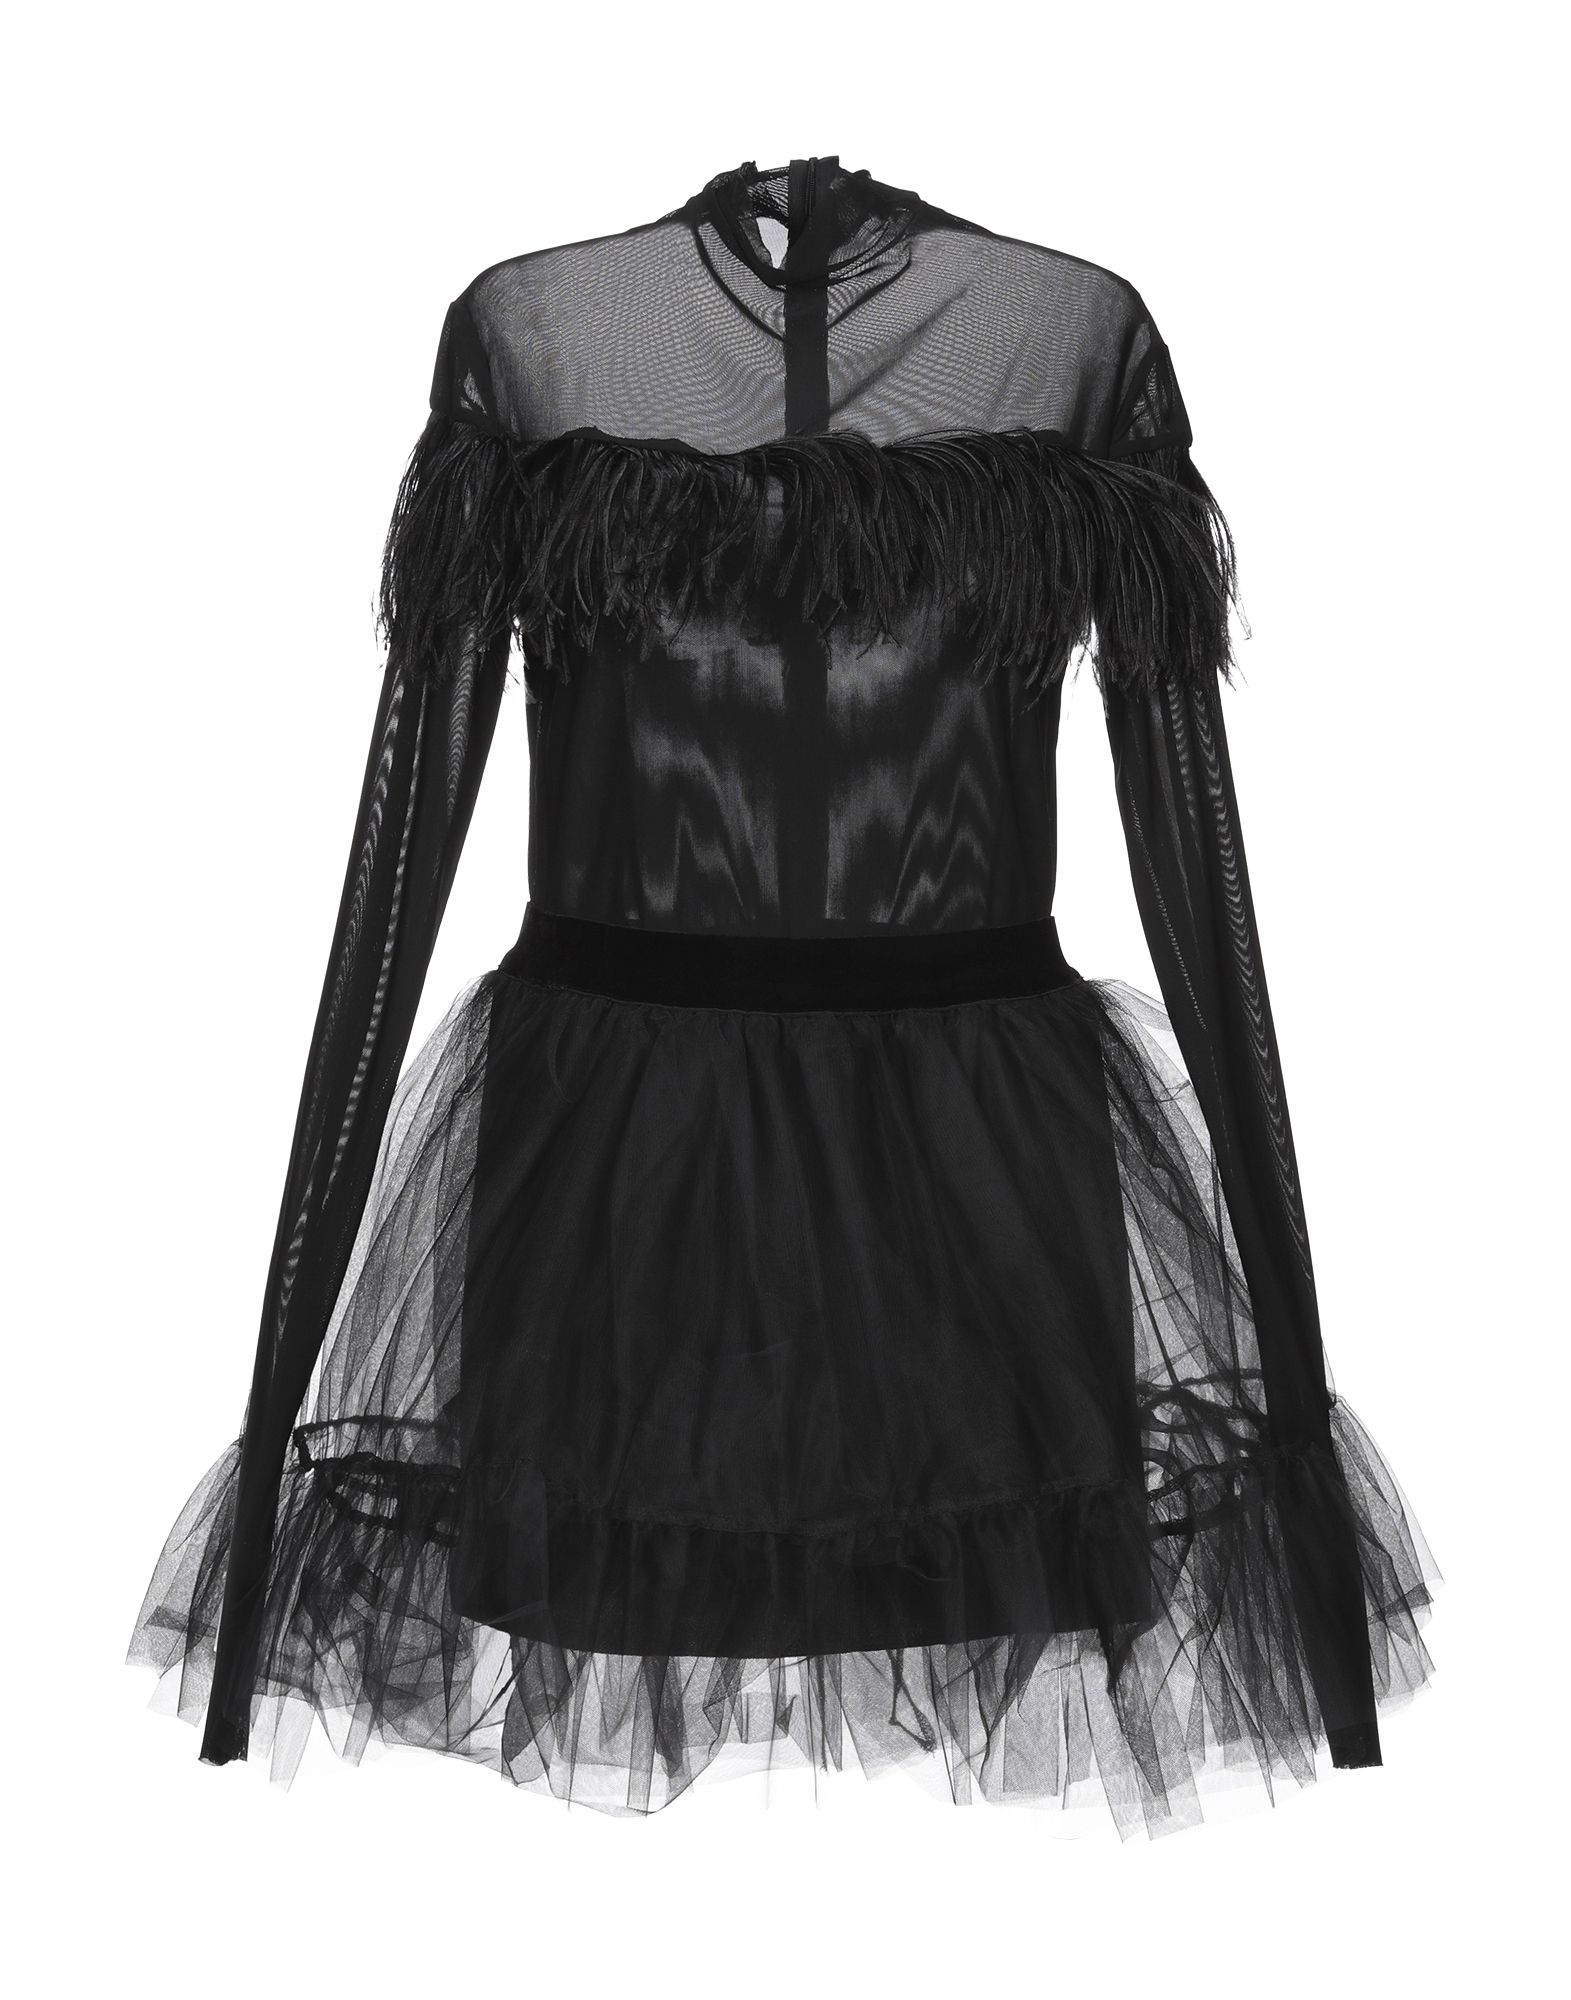 Короткое платье  - Черный цвет